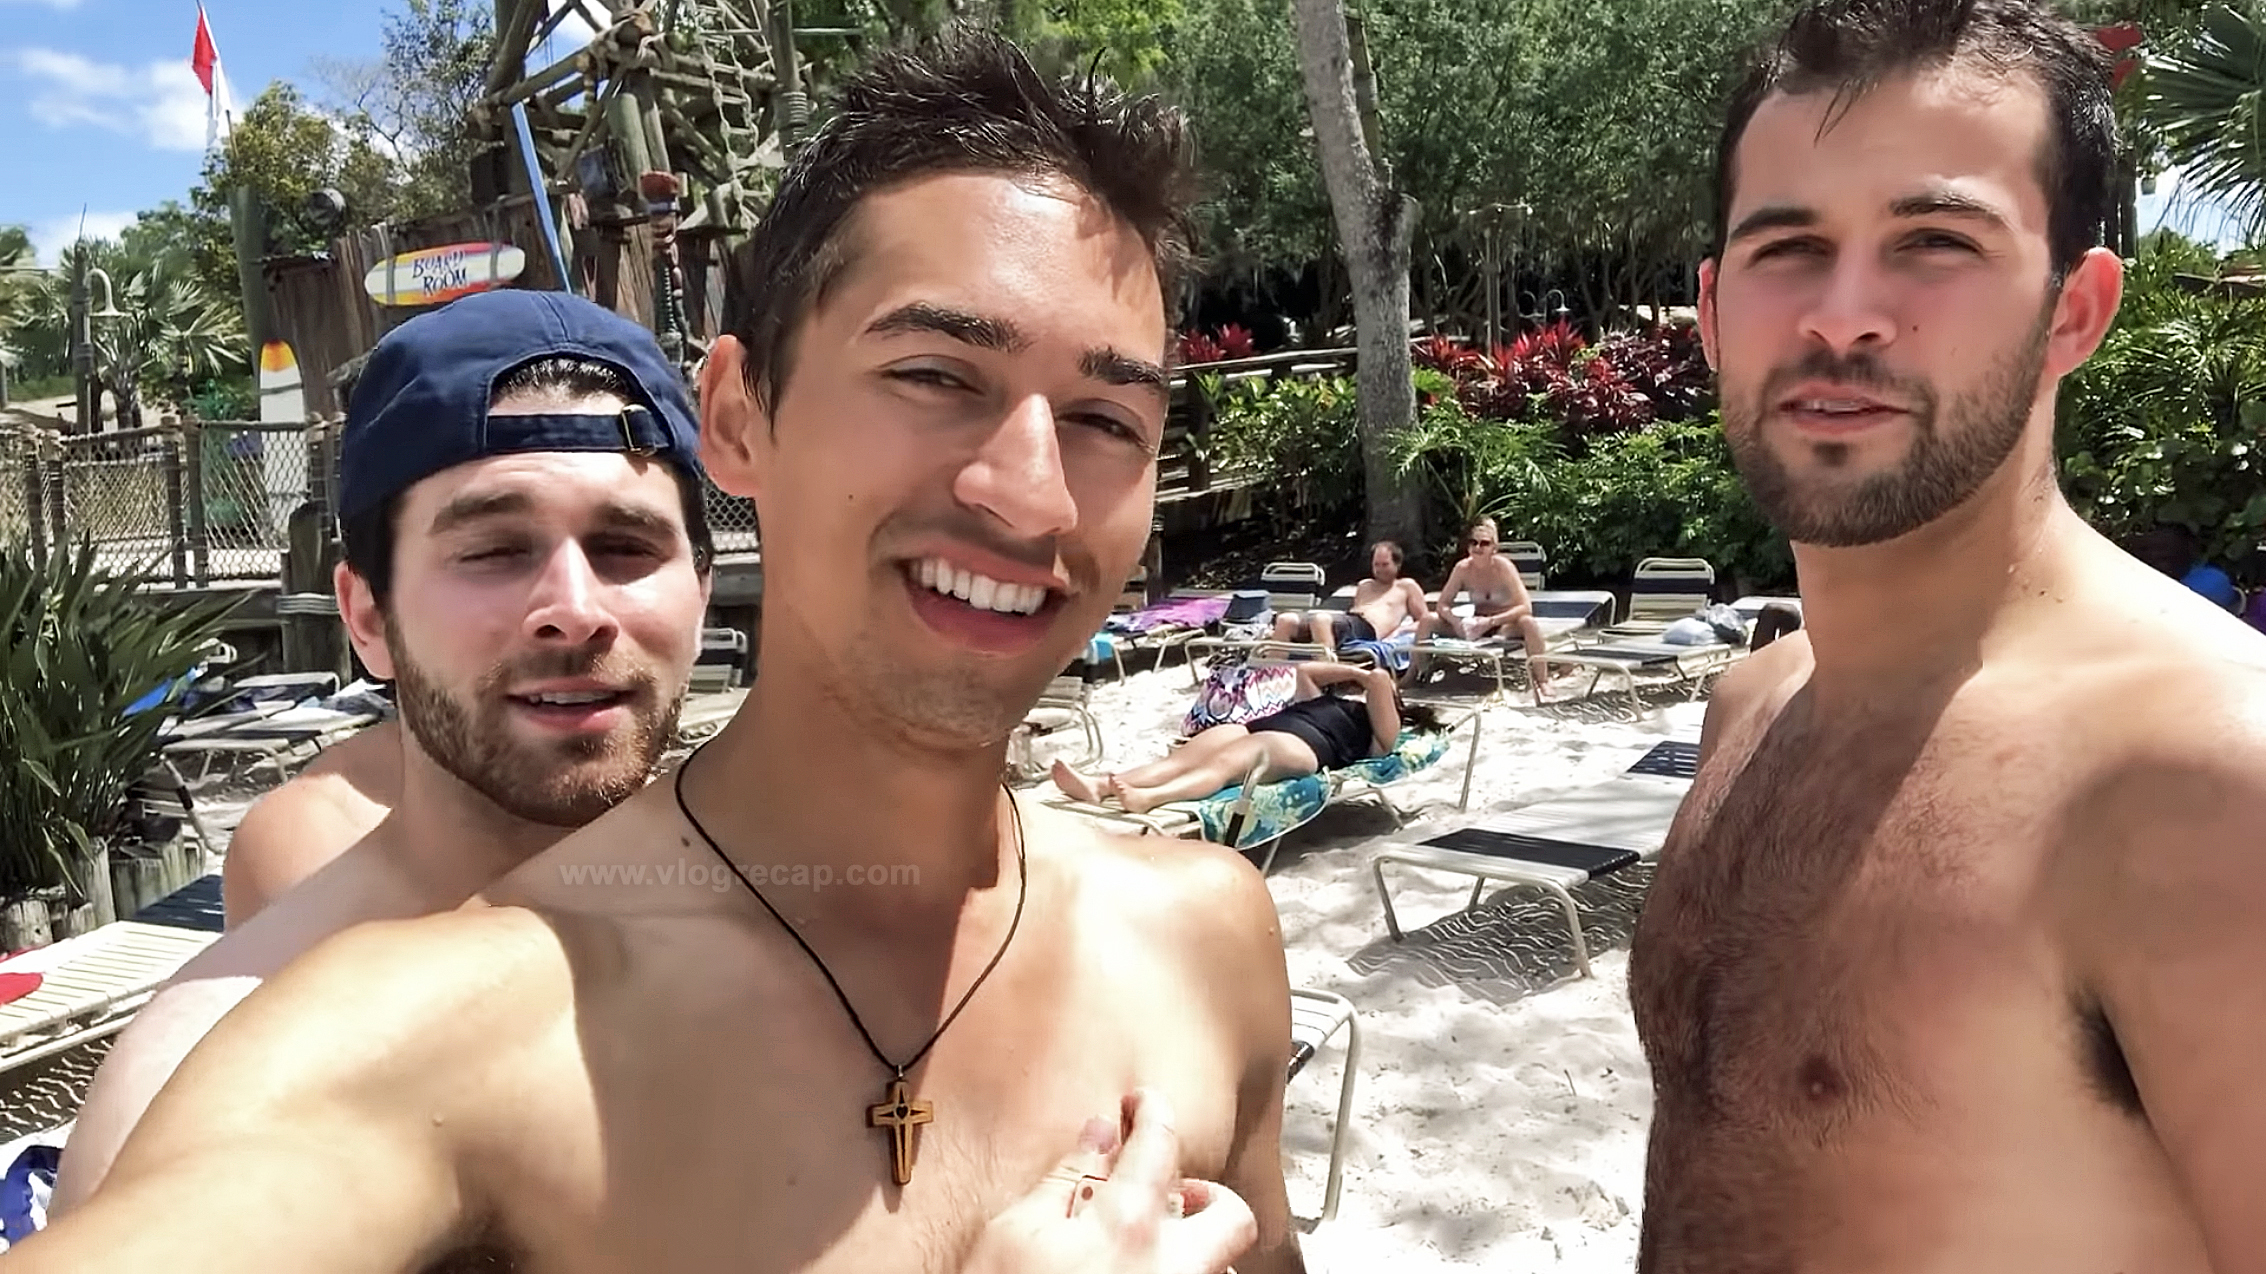 Kyle Pallo, JoJo Crichton and Austin Walker shirtless at Typhoon Lagoon in Walt Disney World